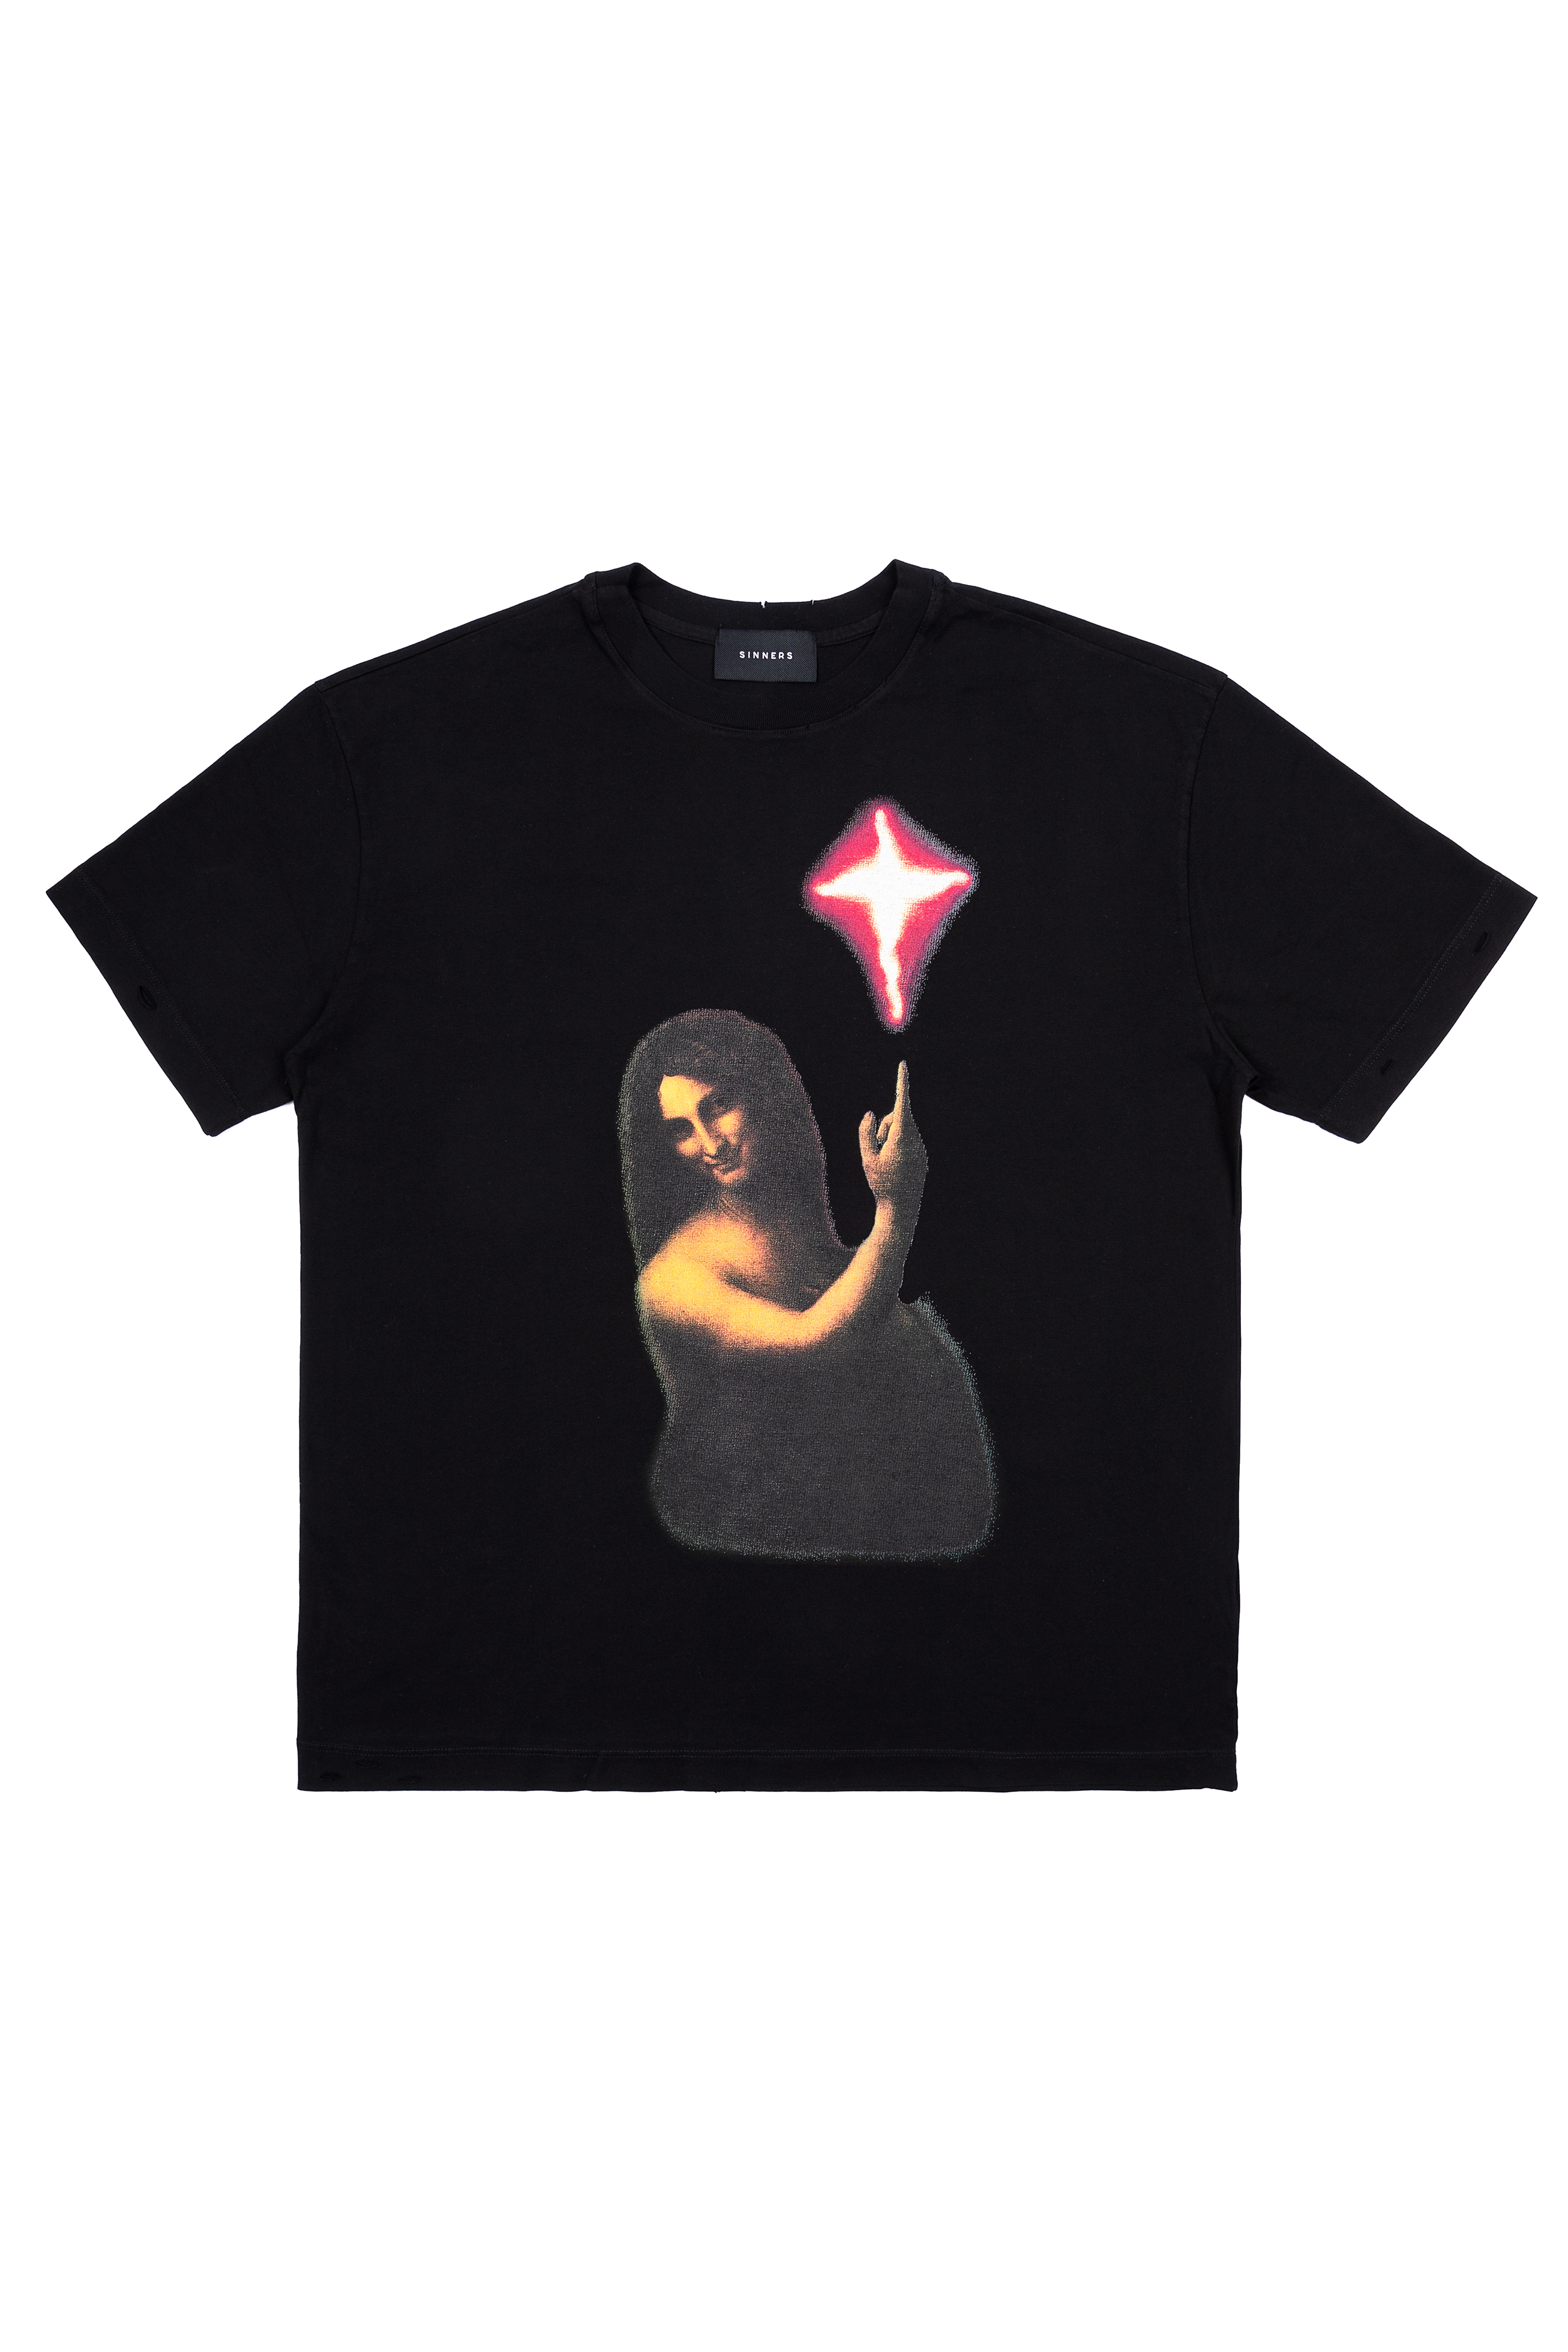 Saint Jean T-Shirt 